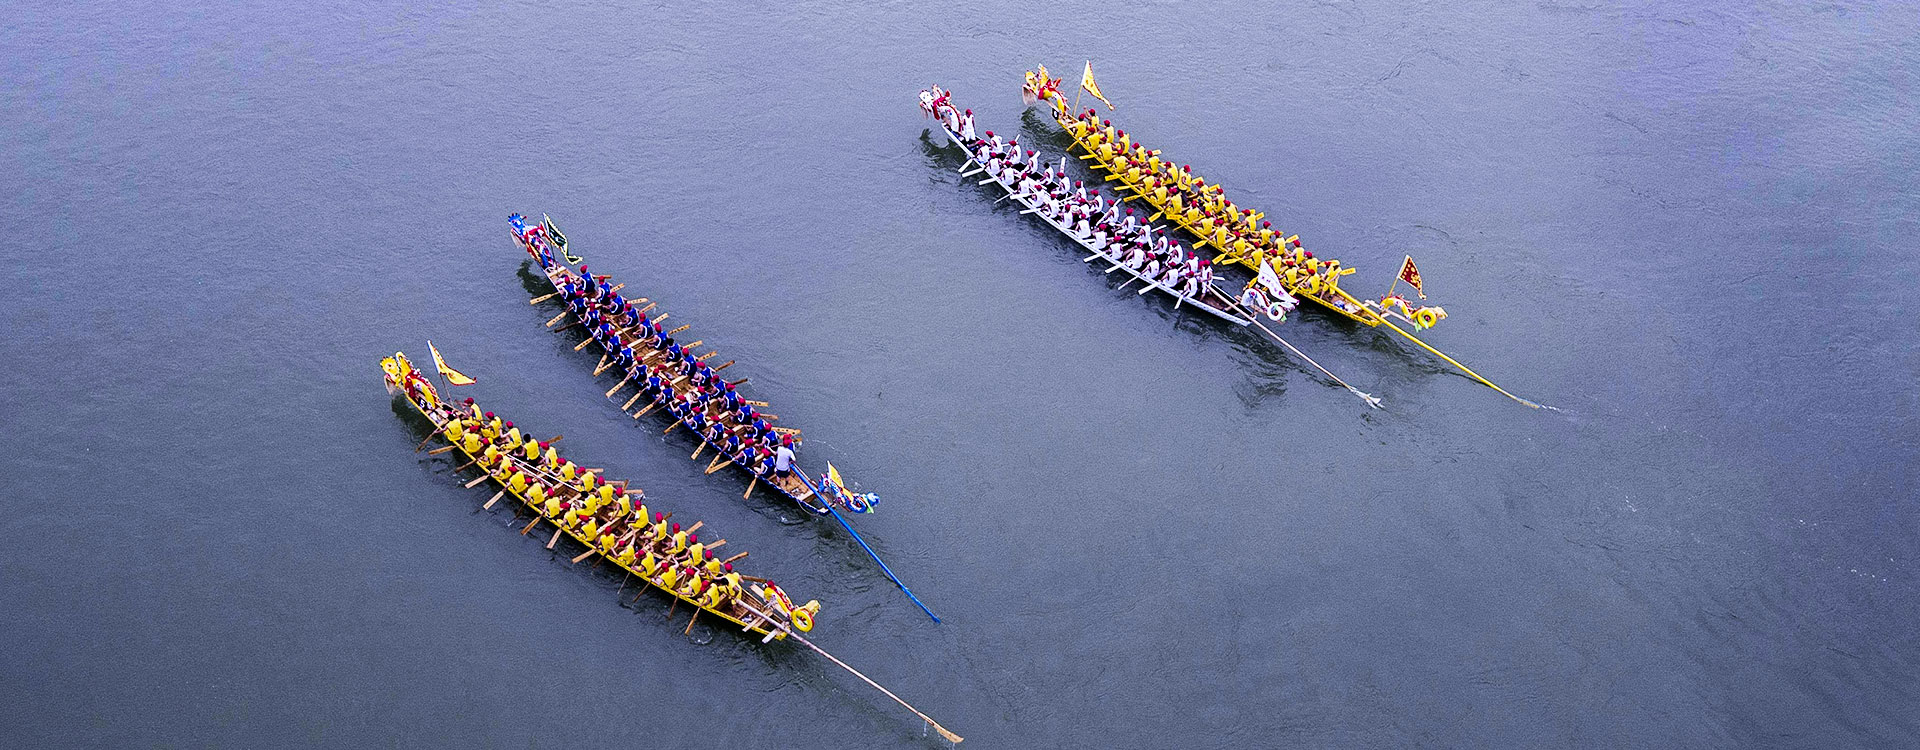 Chongqing-Wulong-Dragon-Boat-Festival-C740.jpg